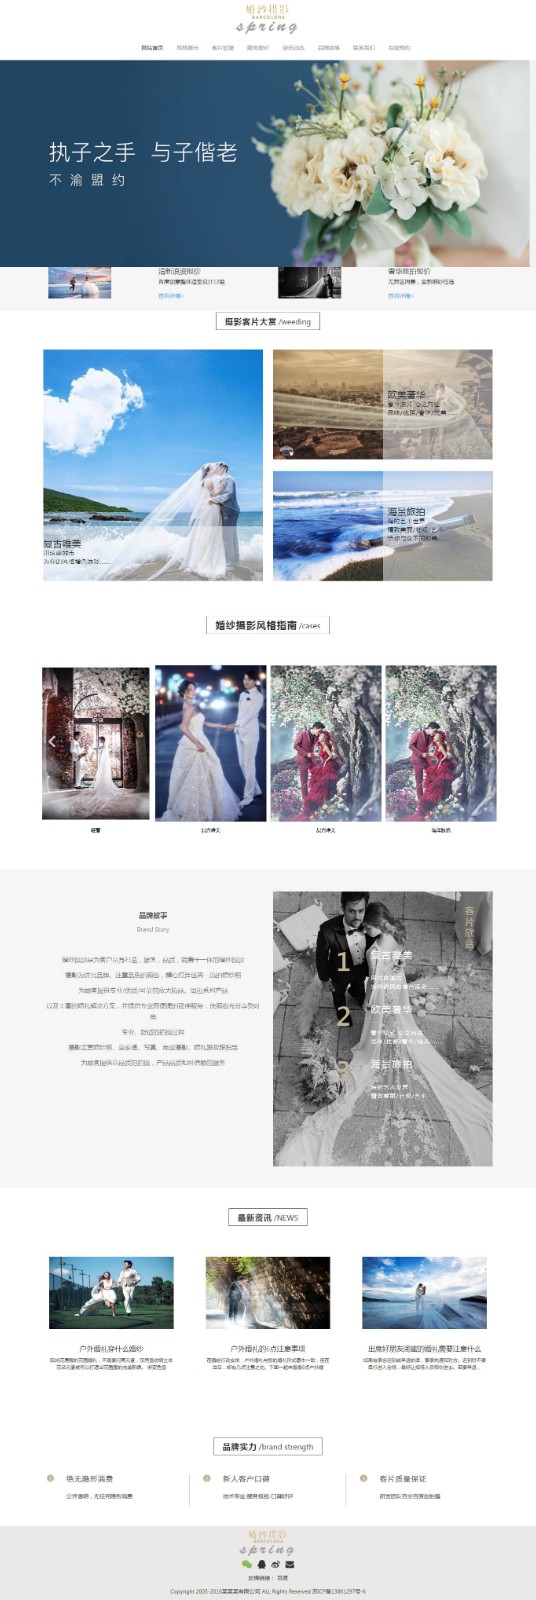 婚纱摄影网站建设